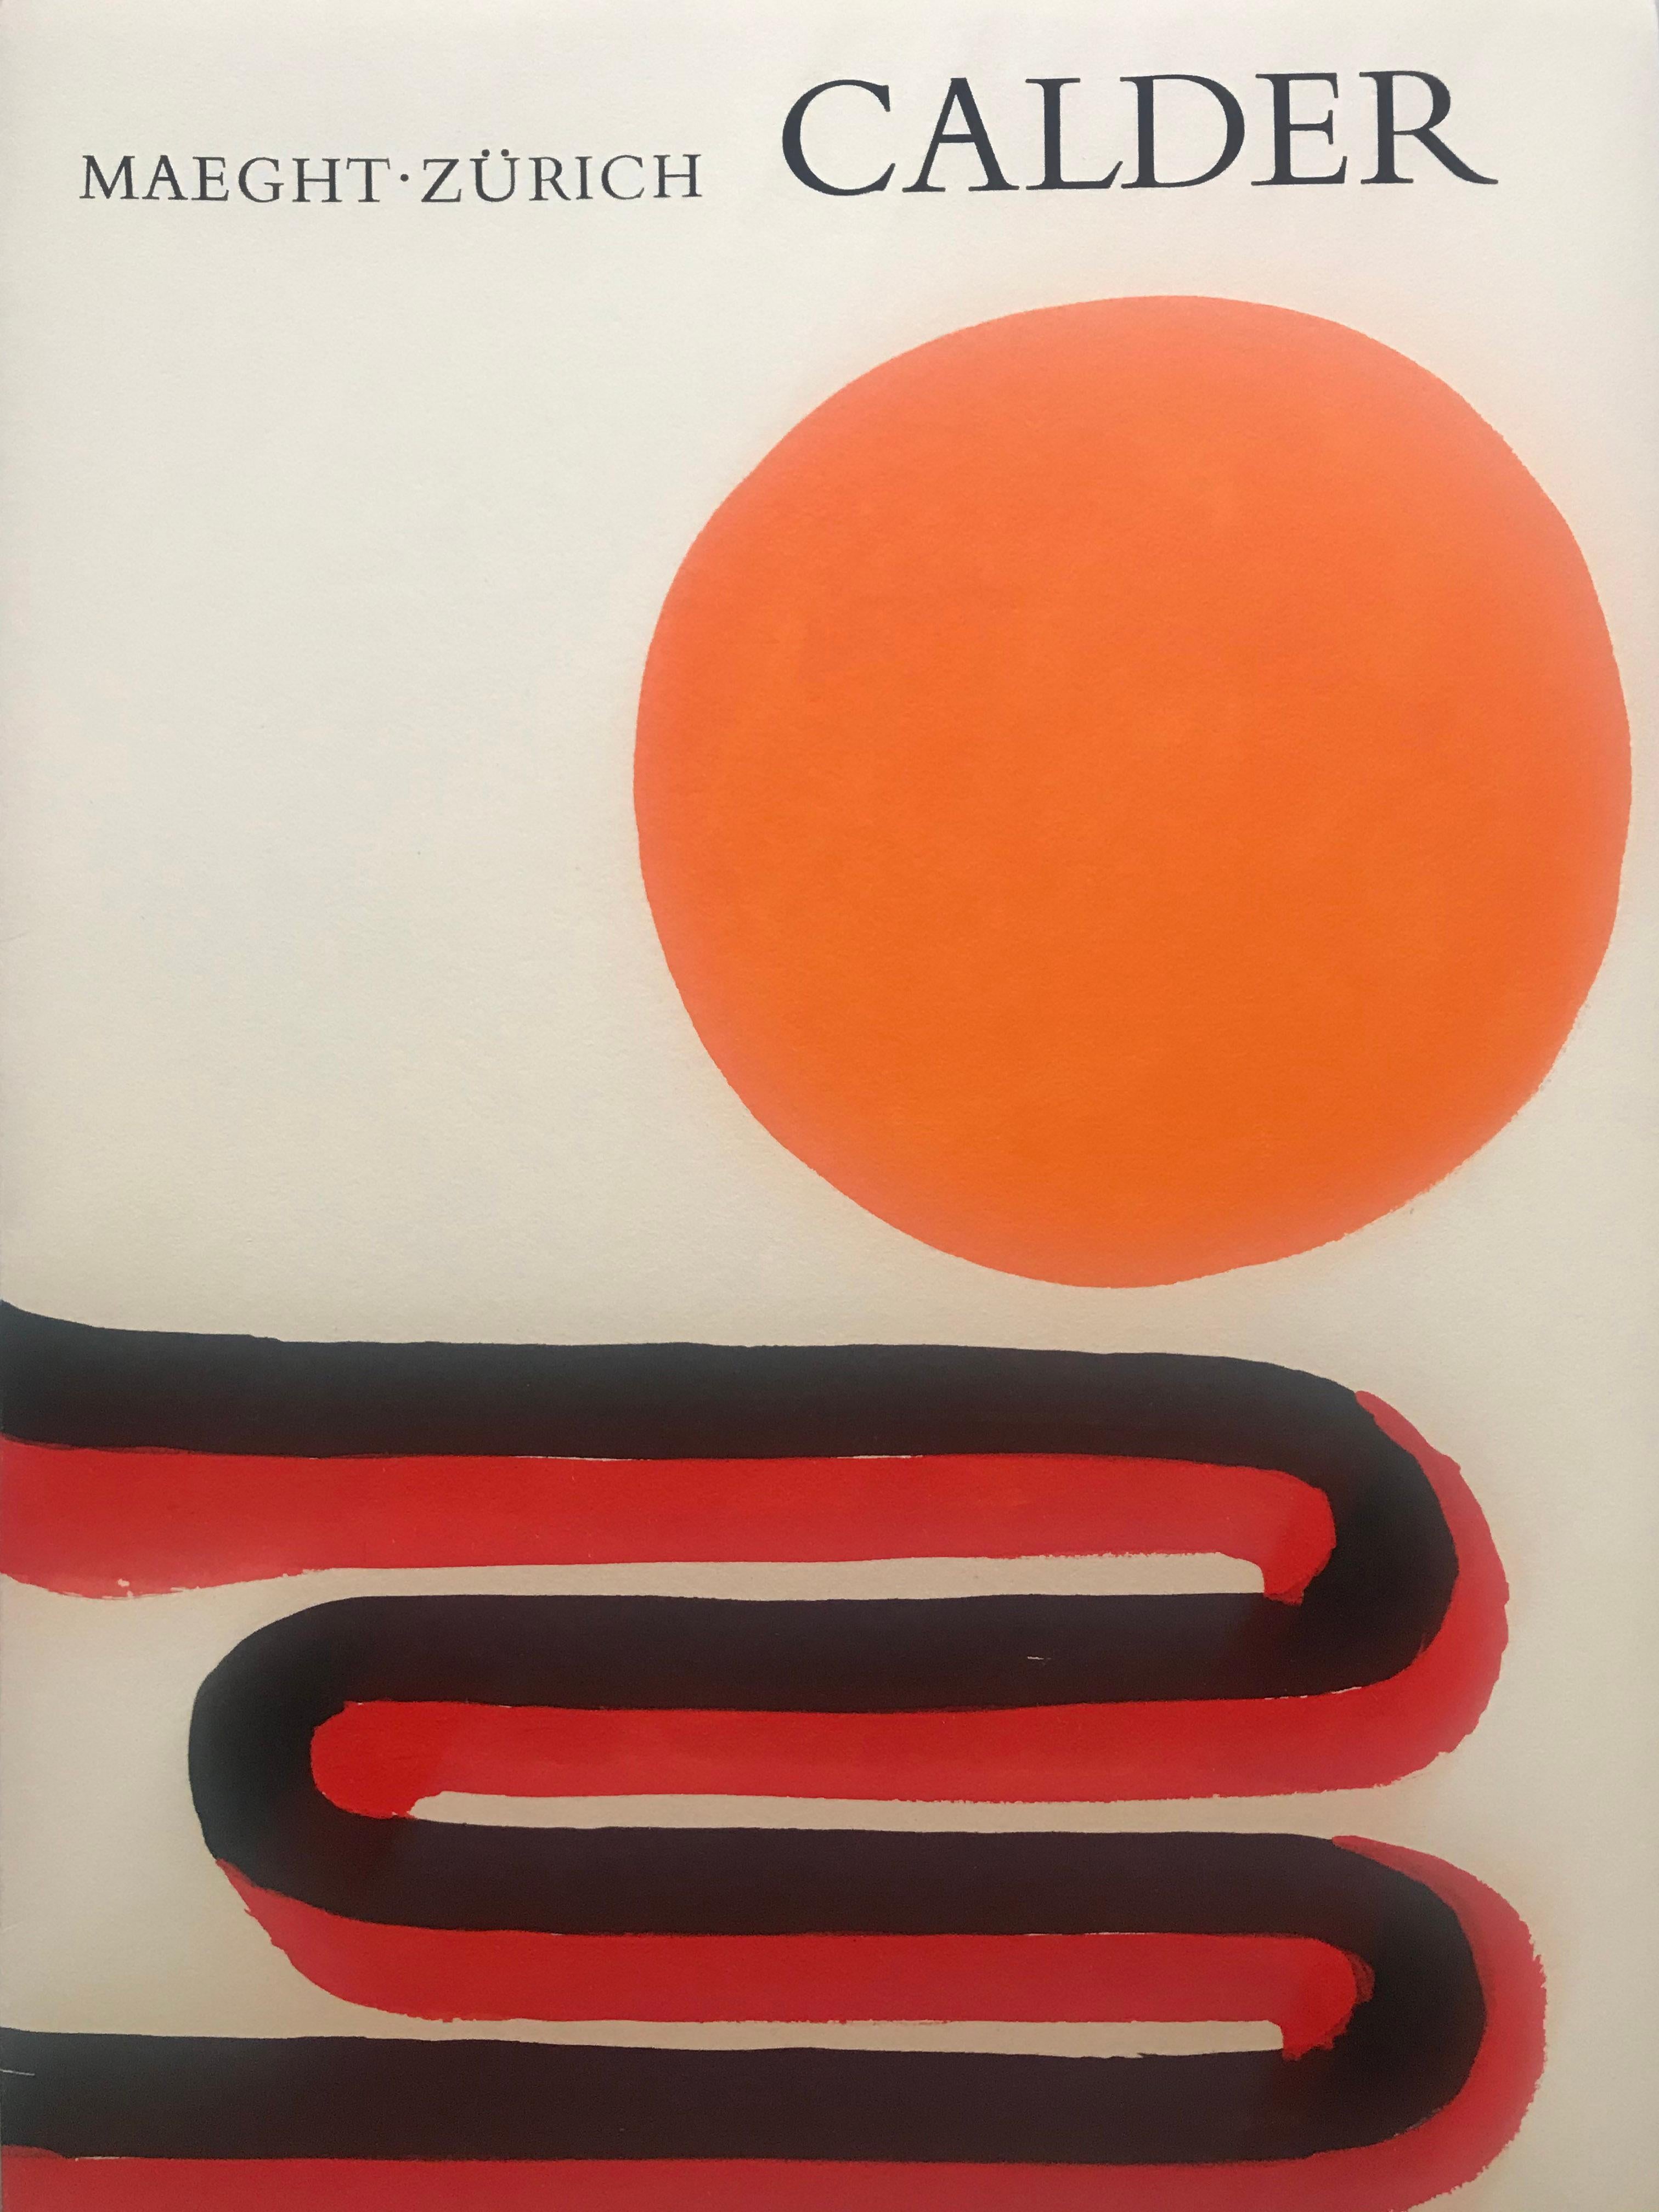 Calder rétrospectif
(Maeght Zurich)
Portfolio non paginé 
26 pages
c.giedion welcker (auteur)
Maeght (éditeur)
1973
Contient 4 lithographies couleur dont la couverture double page 
23,4 cms x 31,9 cms
Parfait état 
290 euros